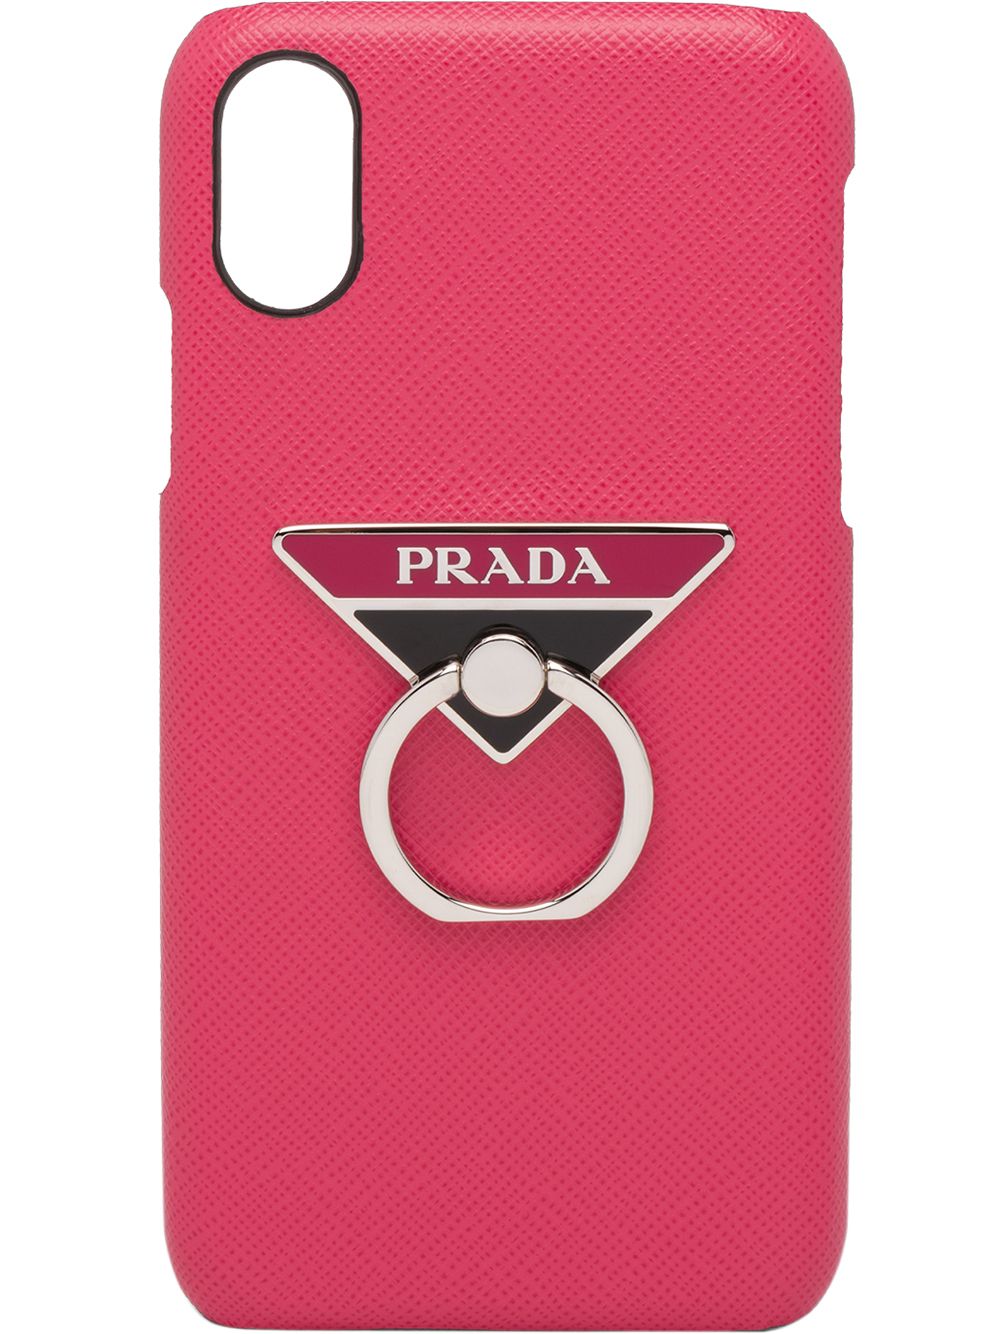 фото Prada чехол для iphone x и xs с кольцом и логотипом